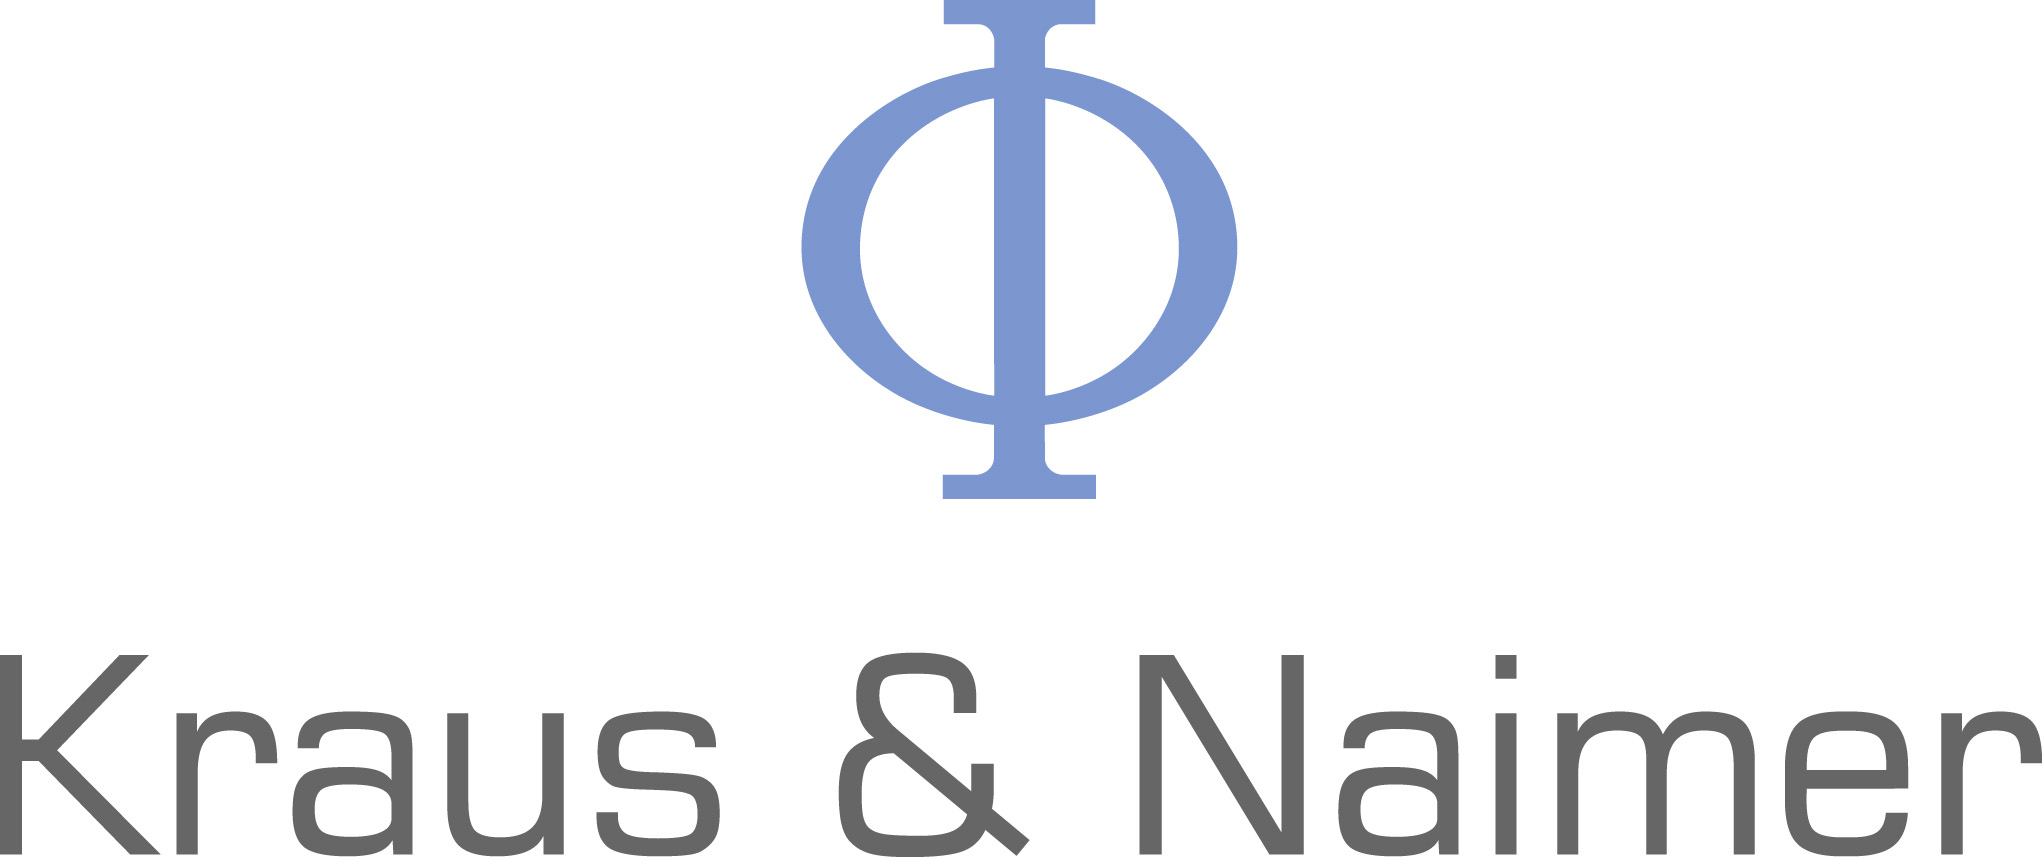 Kraus & Naimer Ltd